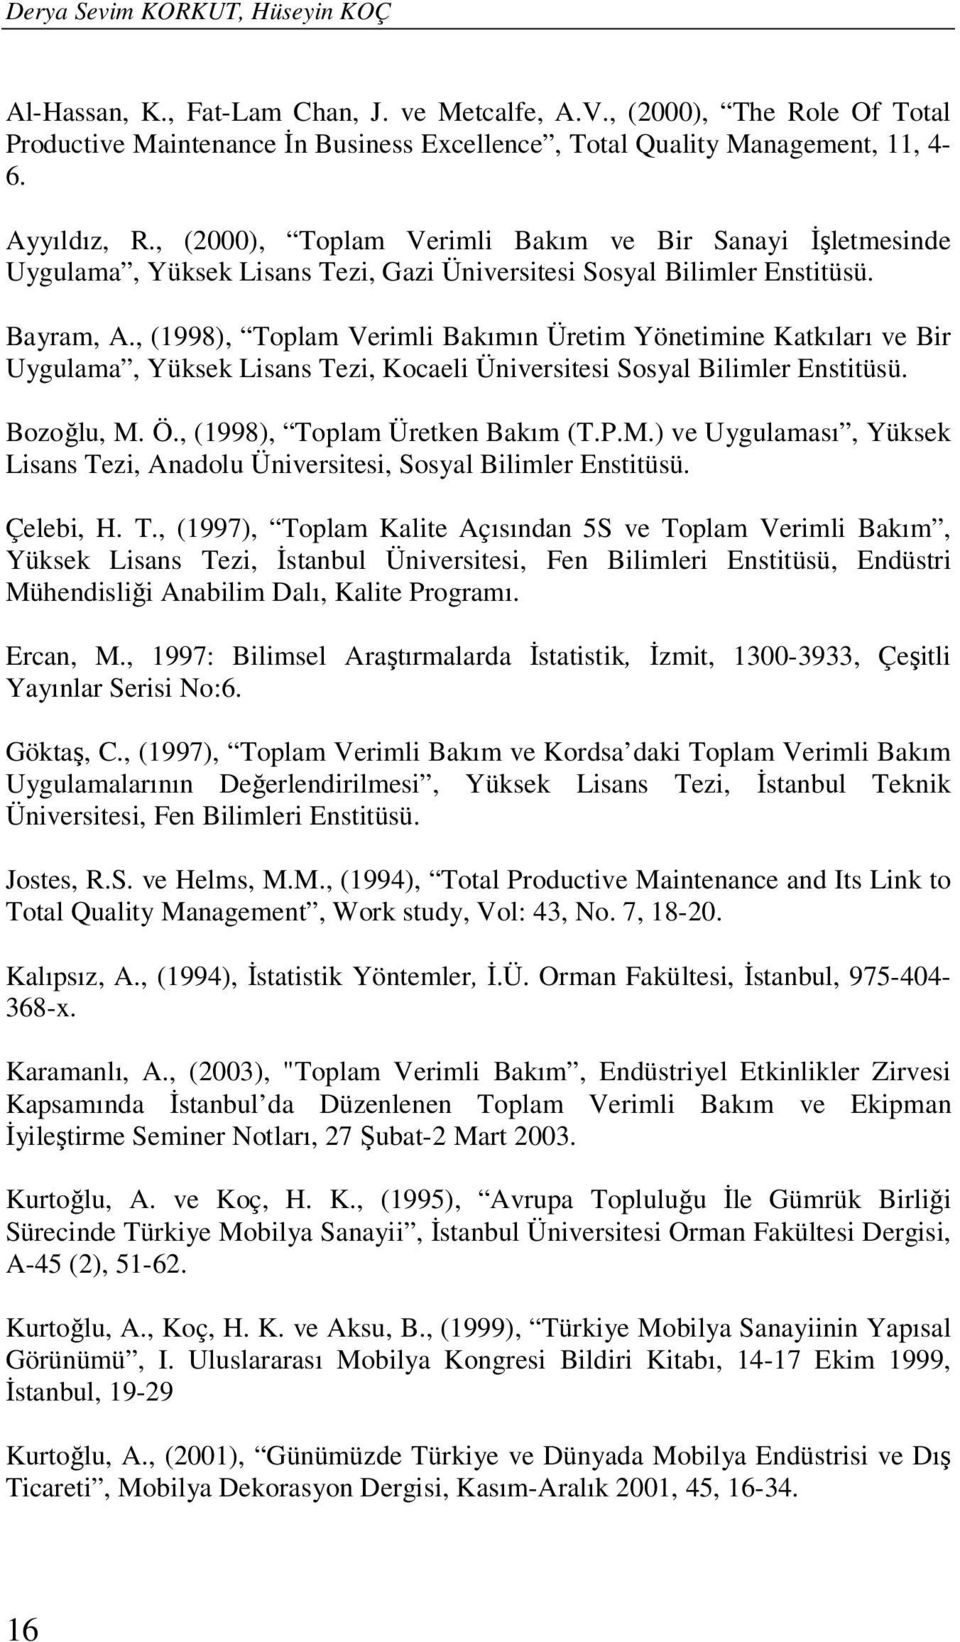 , (1998), Toplam Verimli Bakımın Üretim Yönetimine Katkıları ve Bir Uygulama, Yüksek Lisans Tezi, Kocaeli Üniversitesi Sosyal Bilimler Enstitüsü. Bozoğlu, M.